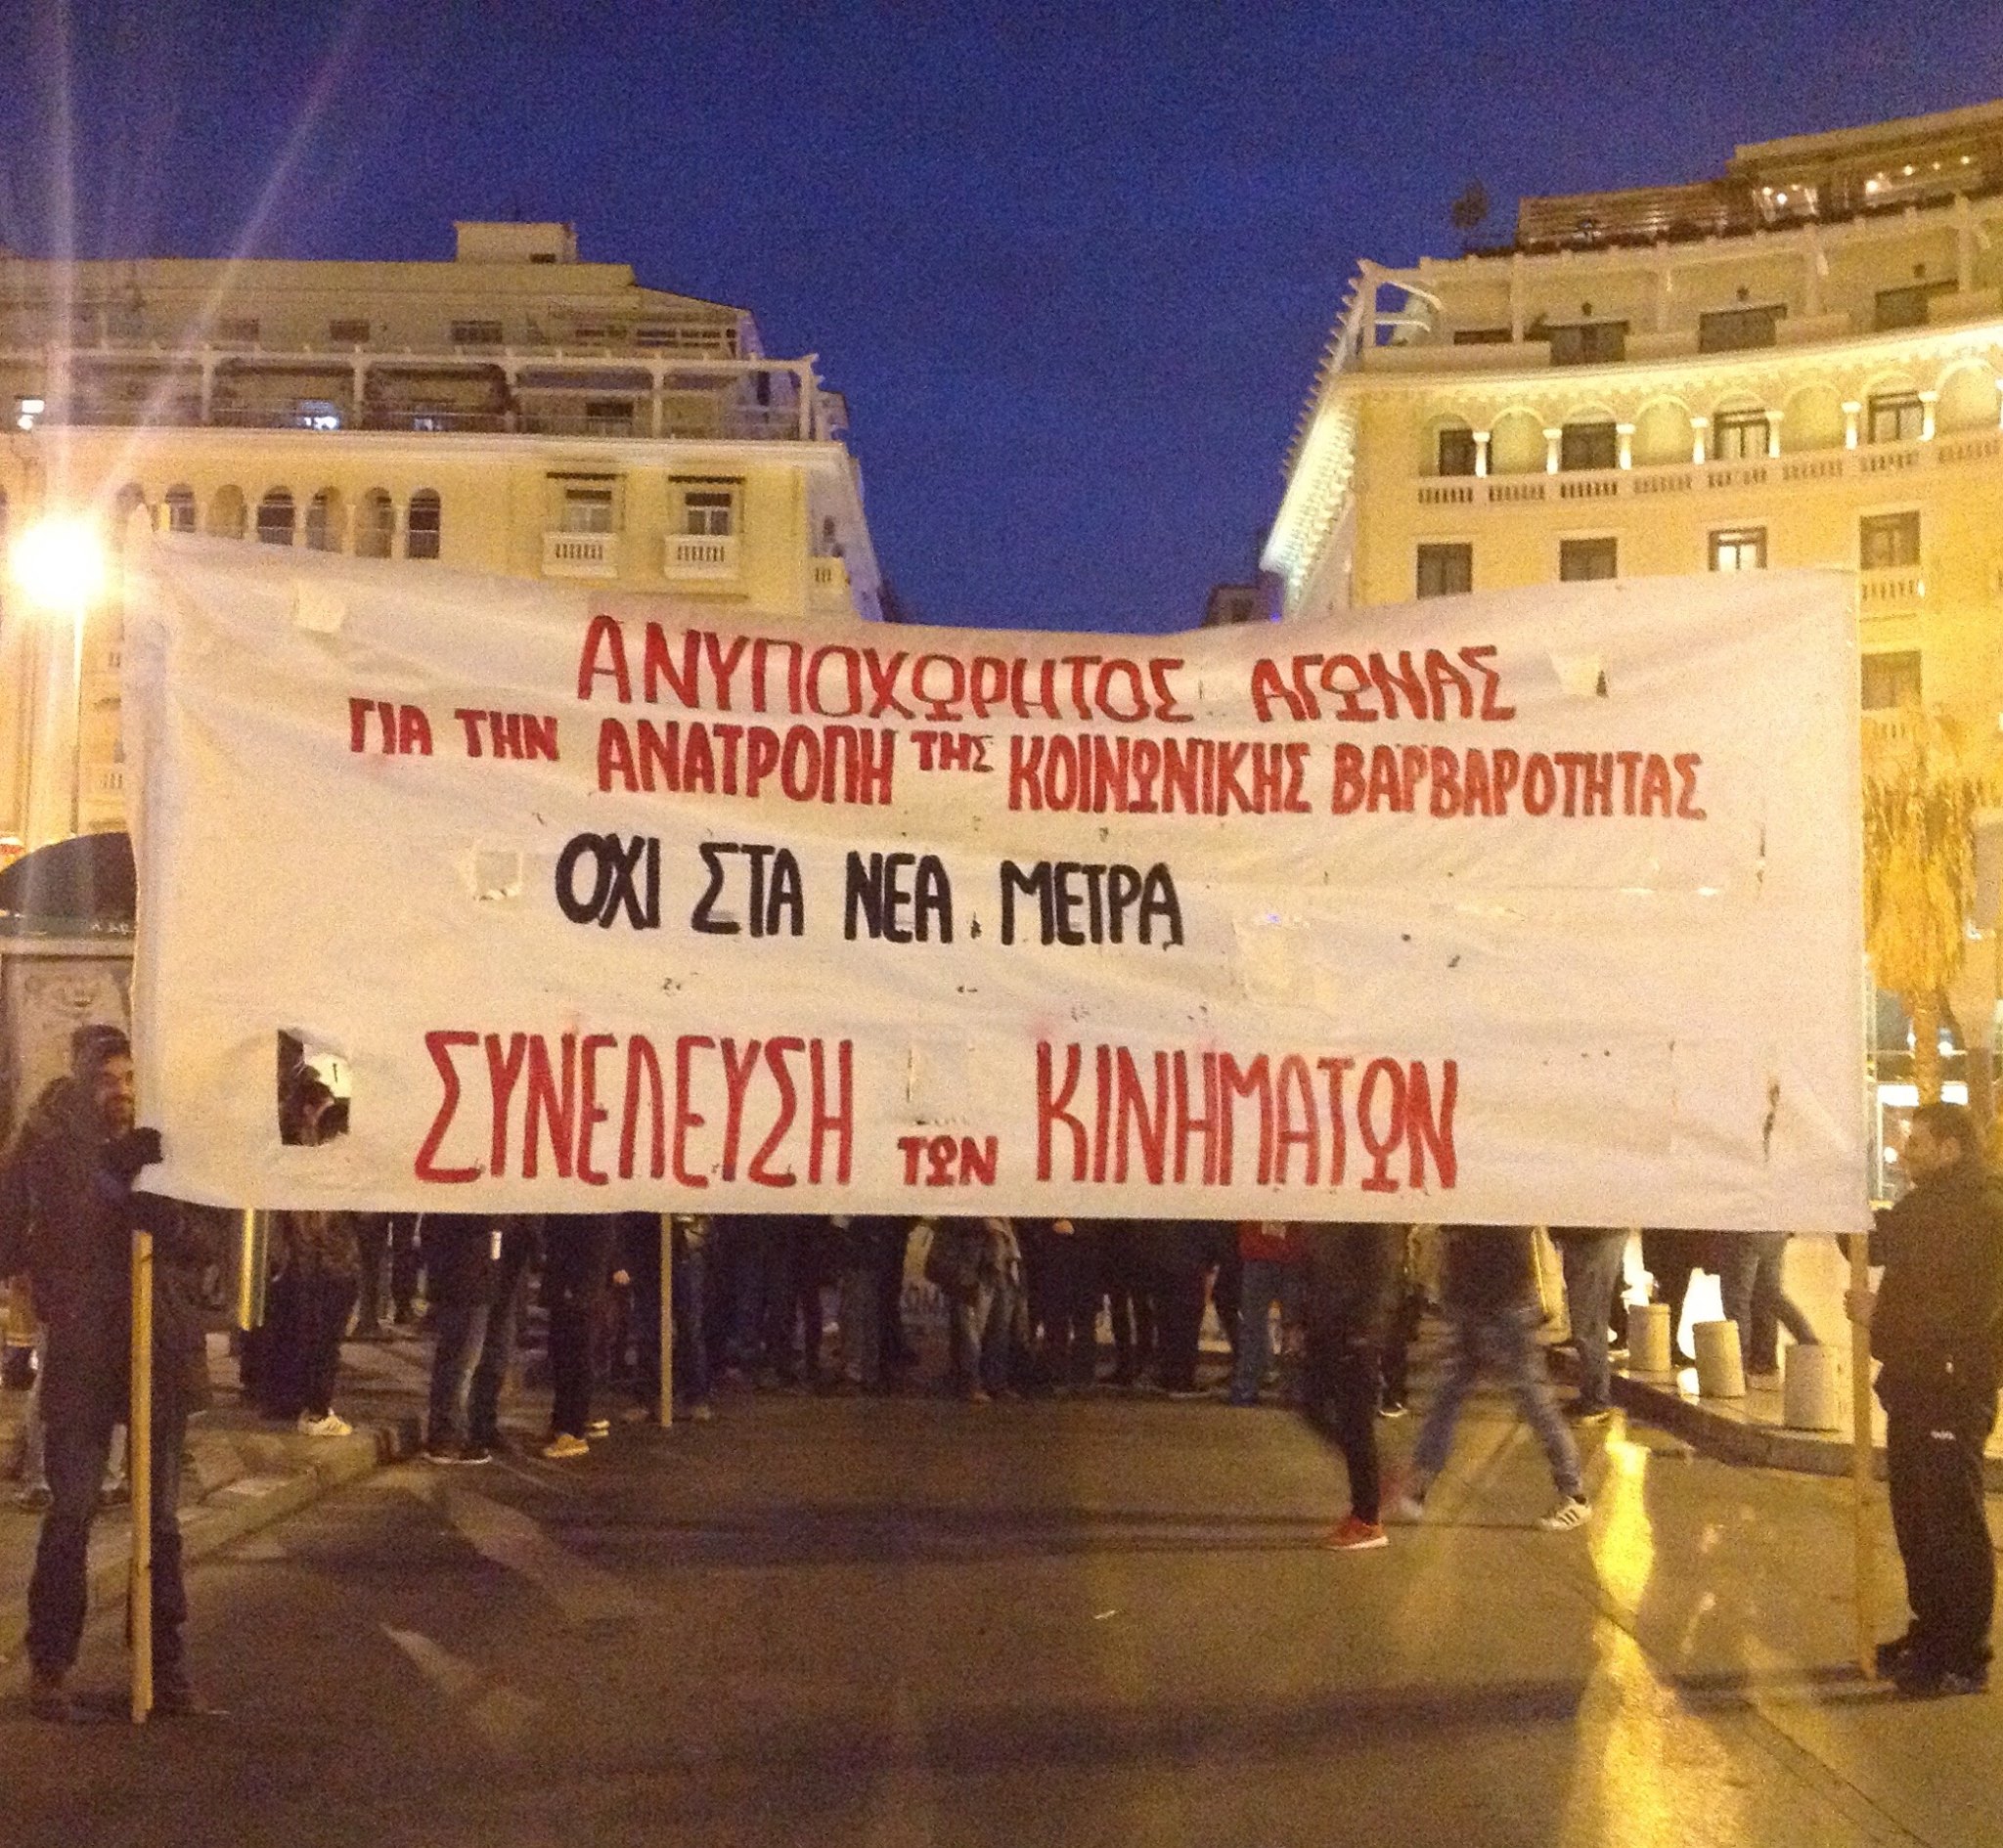 Πορεία της Συνέλευσης των Κινημάτων το απόγευμα της Κυριακής, στη Θεσσαλονίκη